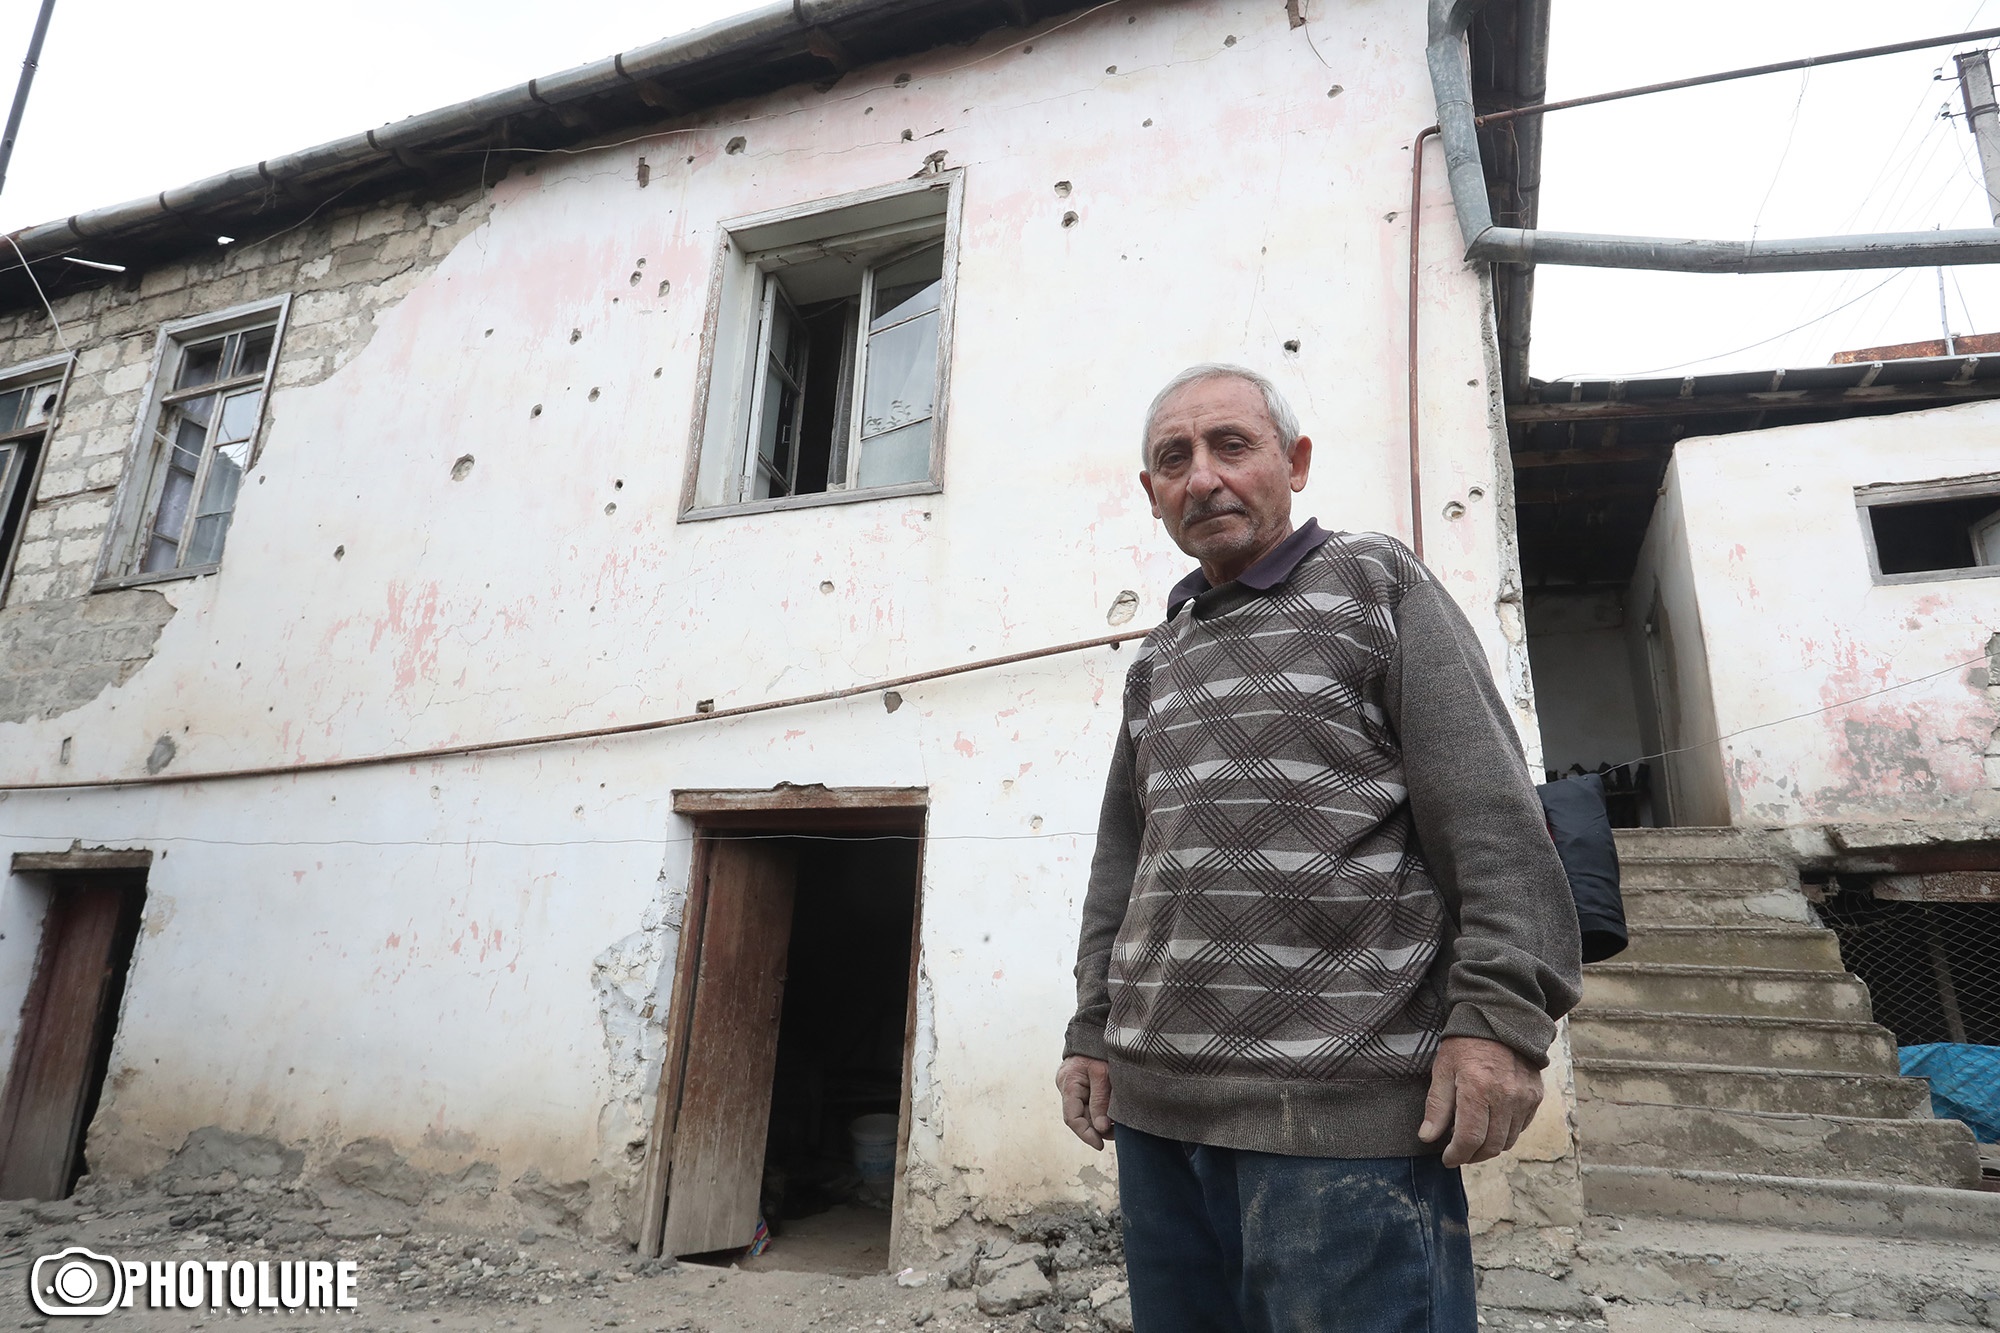 Ադրբեջանի ու Թուրքիայի գործողություններում Արցախի հայությանը ցեղասպանելու վտանգ կա